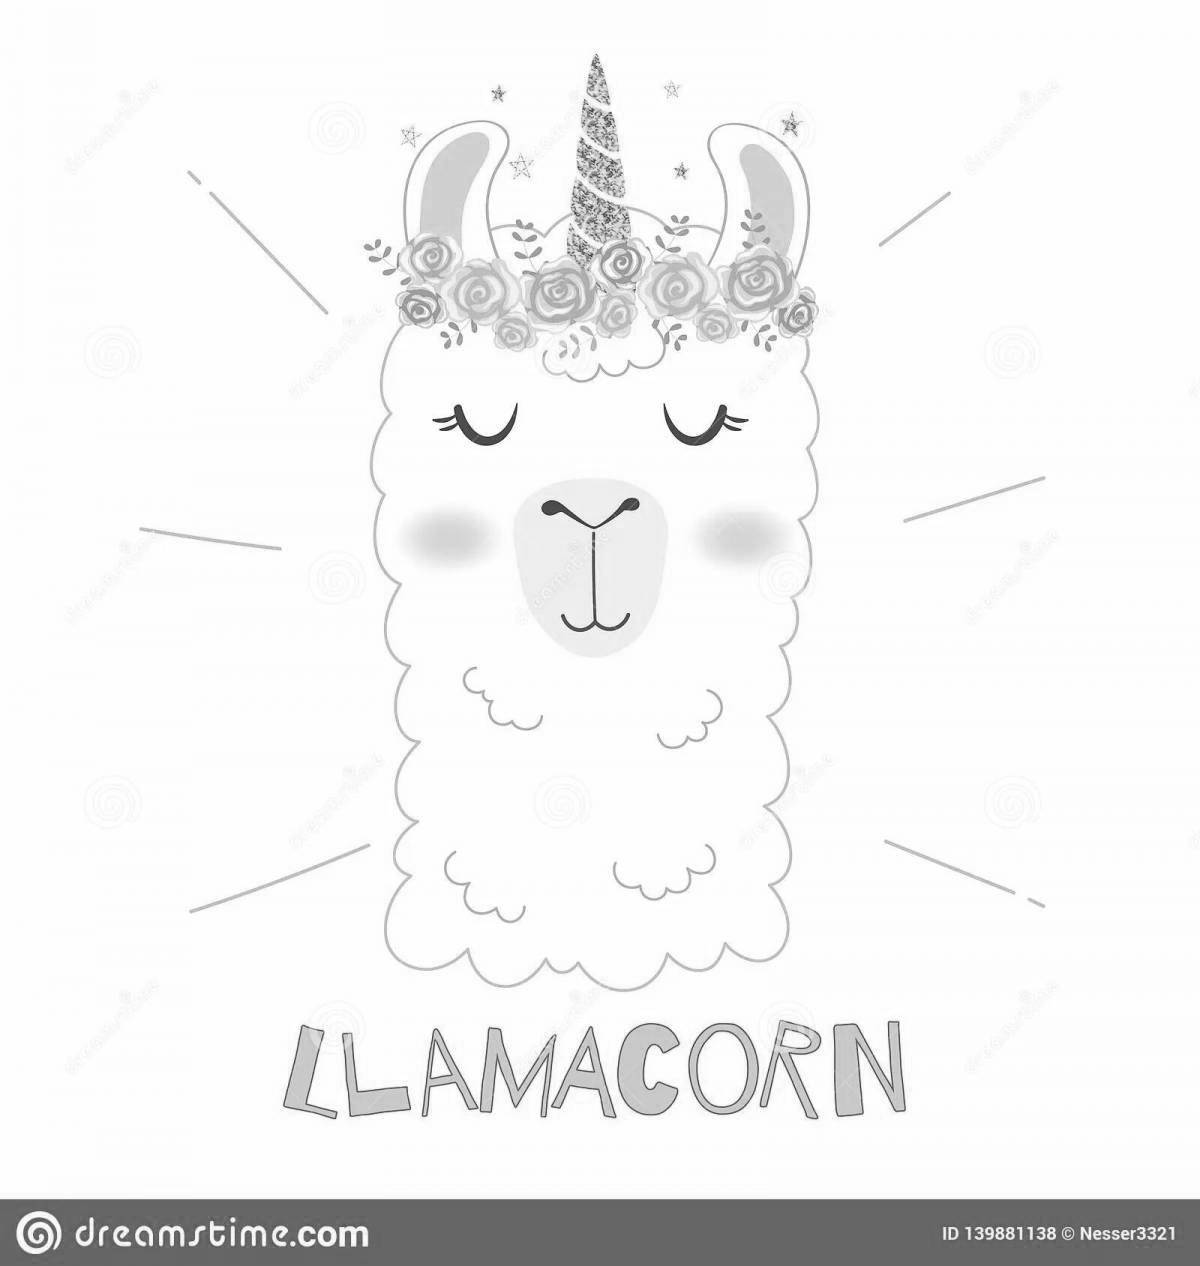 Dazzling coloring llama unicorn